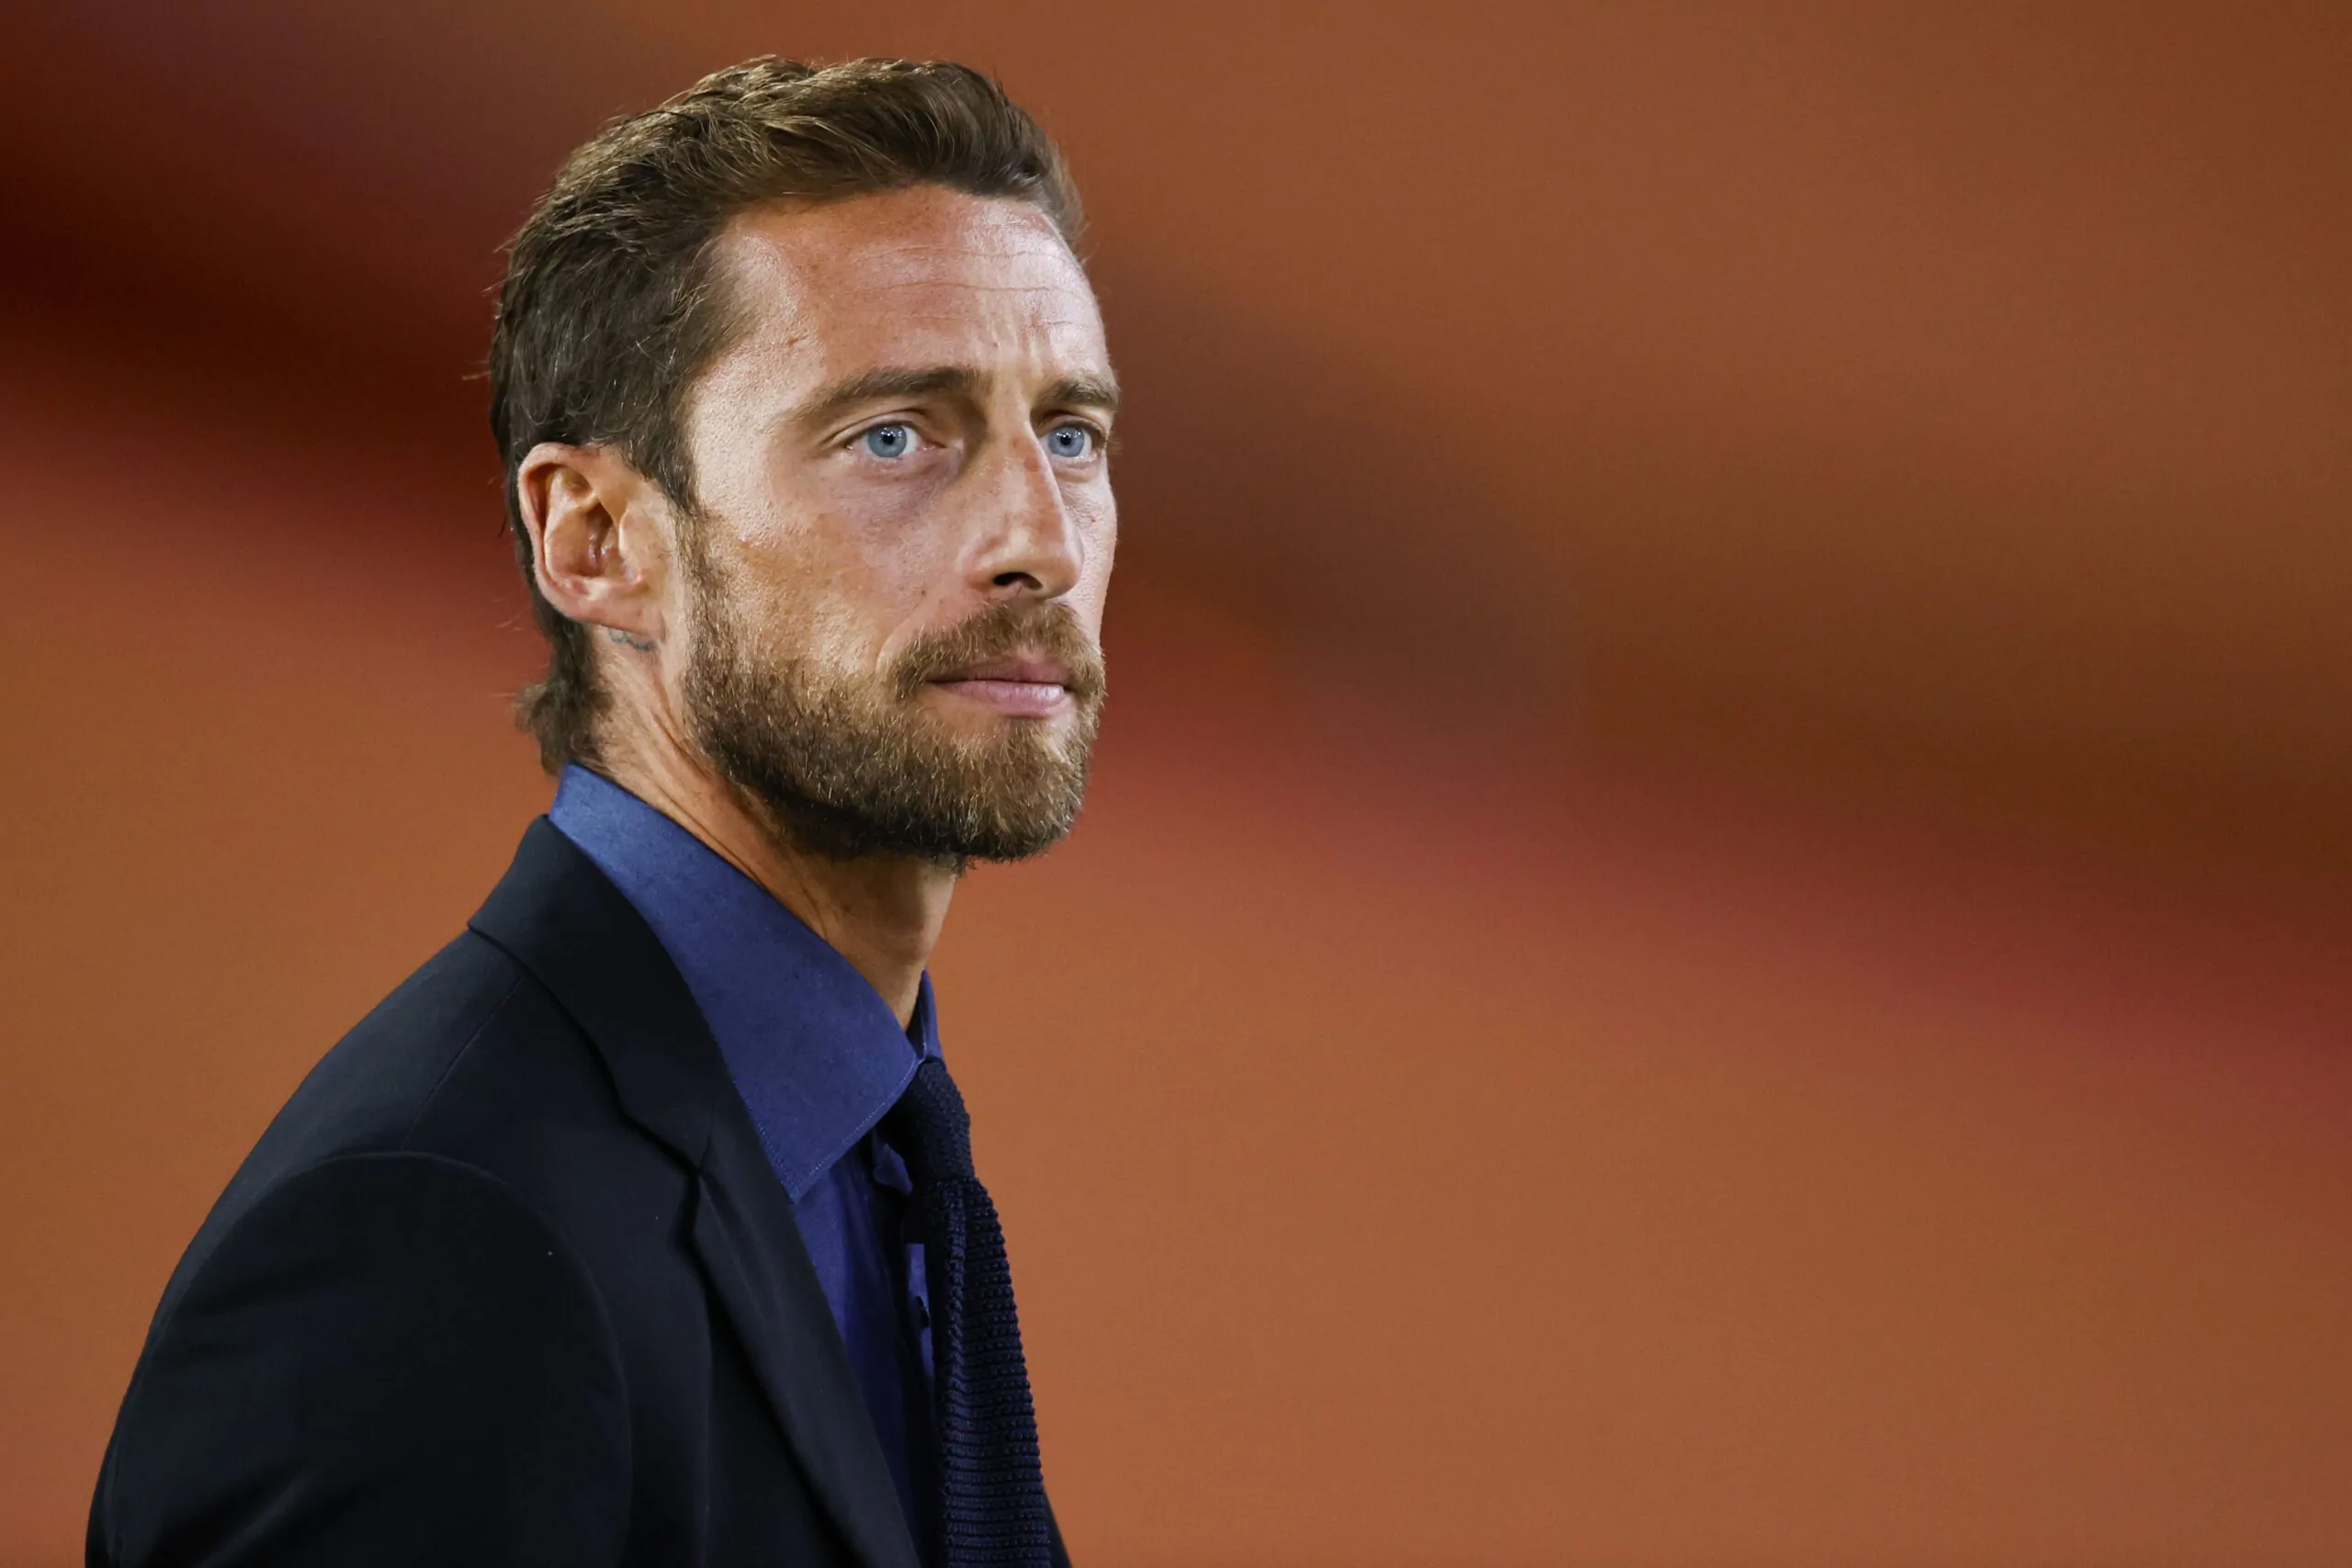 Caso plusvalenze, Varriale risponde a Marchisio: “Mi hai deluso”